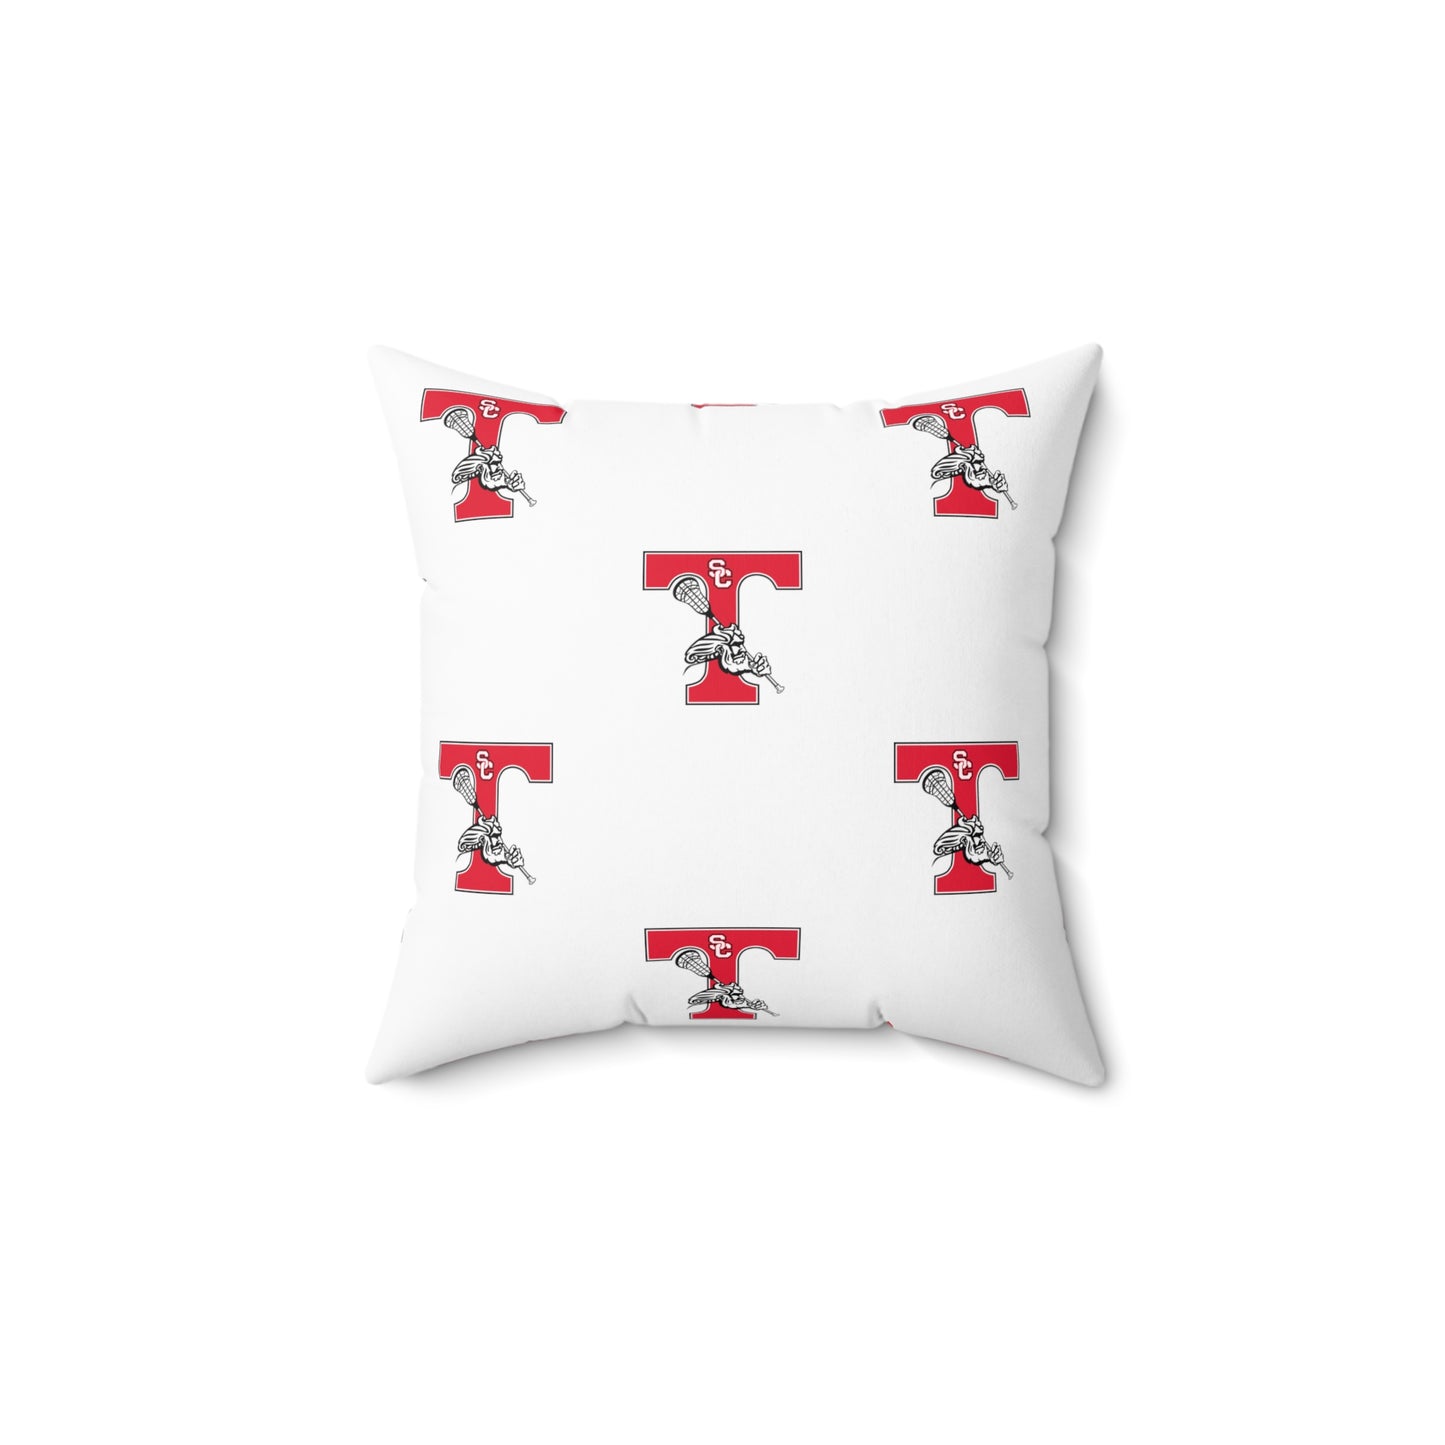 Triton Lacrosse Spun Polyester Square Pillow